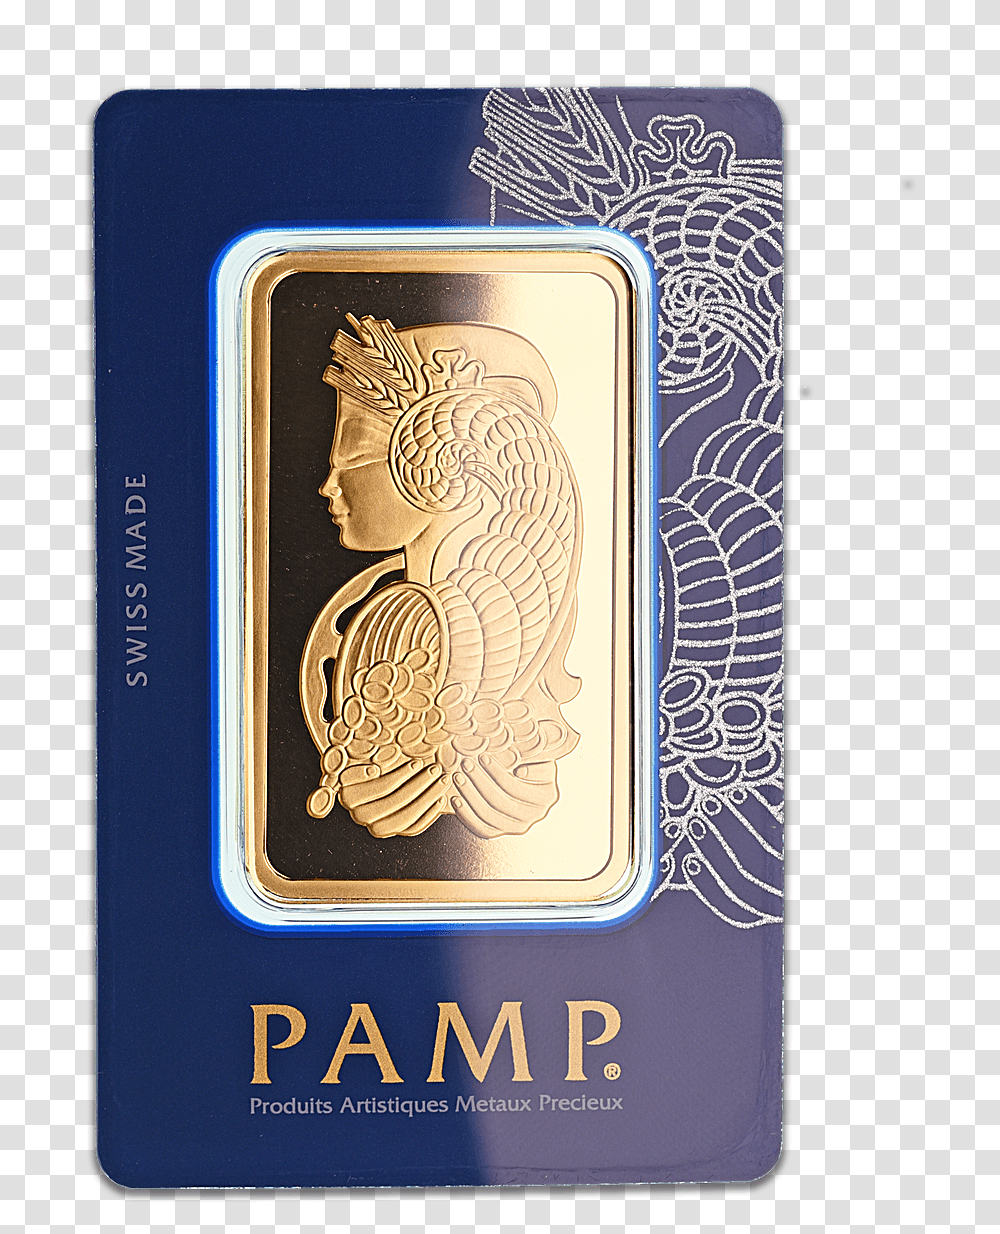 Pamp Gold Bar 1 Tola Gold Bar, Label, Liquor, Alcohol Transparent Png